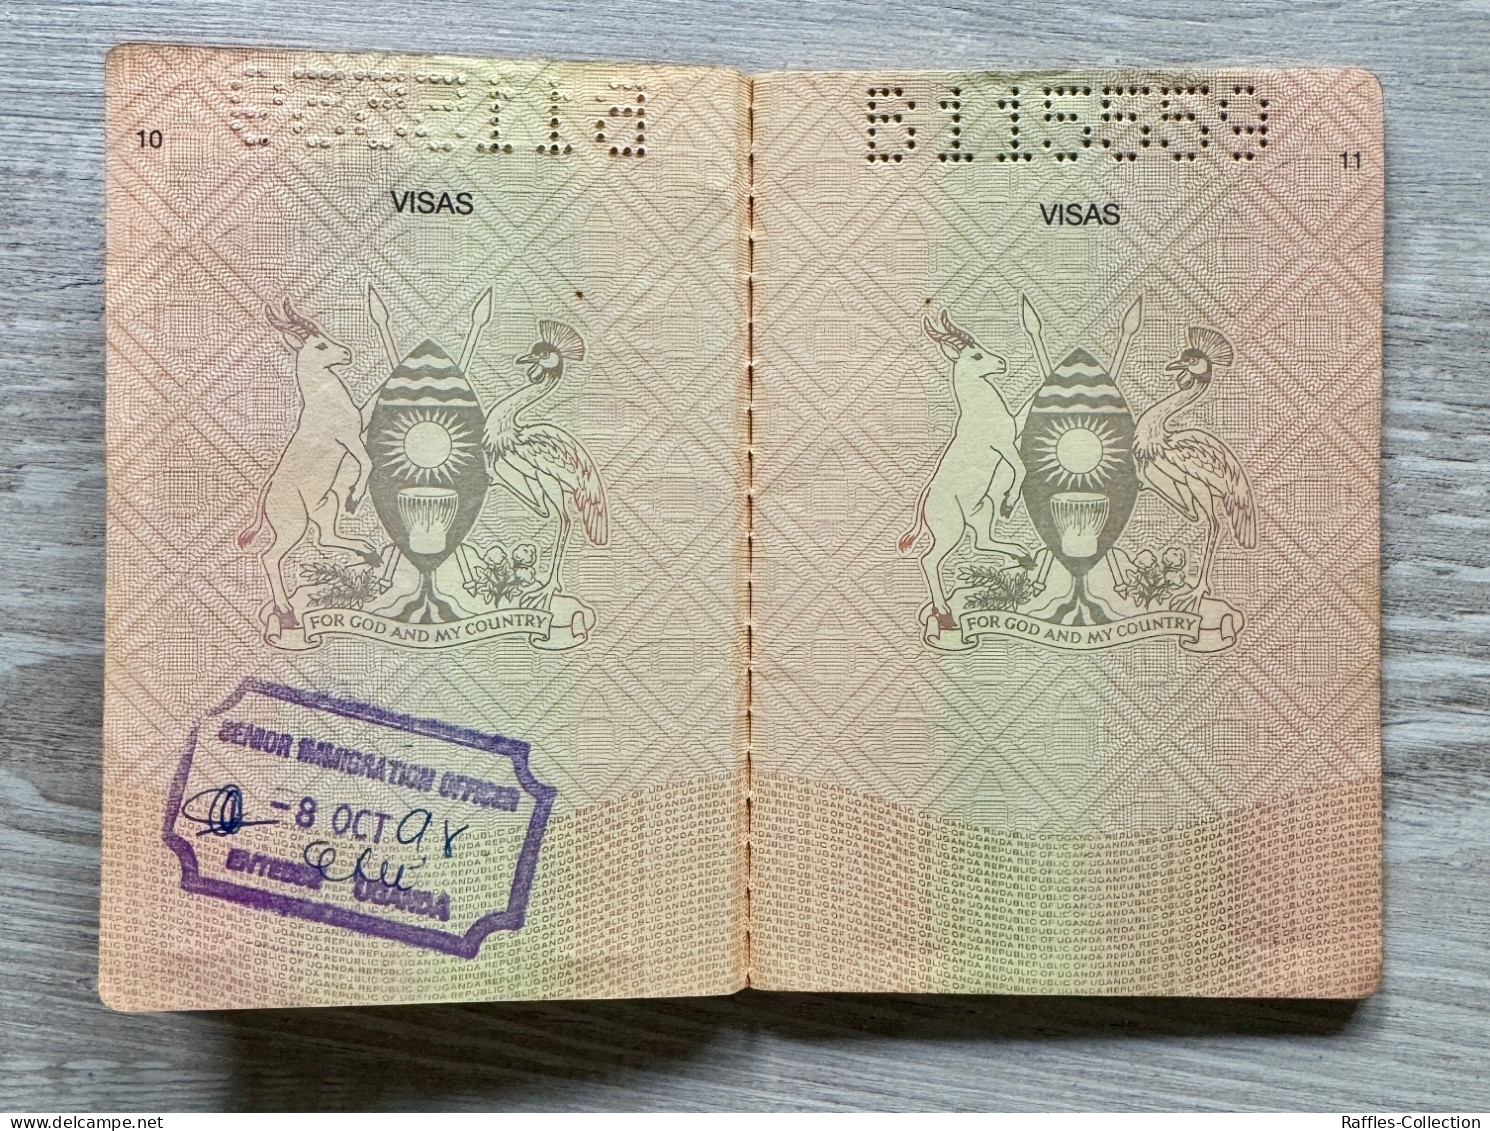 Uganda passport passeport reisepass pasaporte passaporto